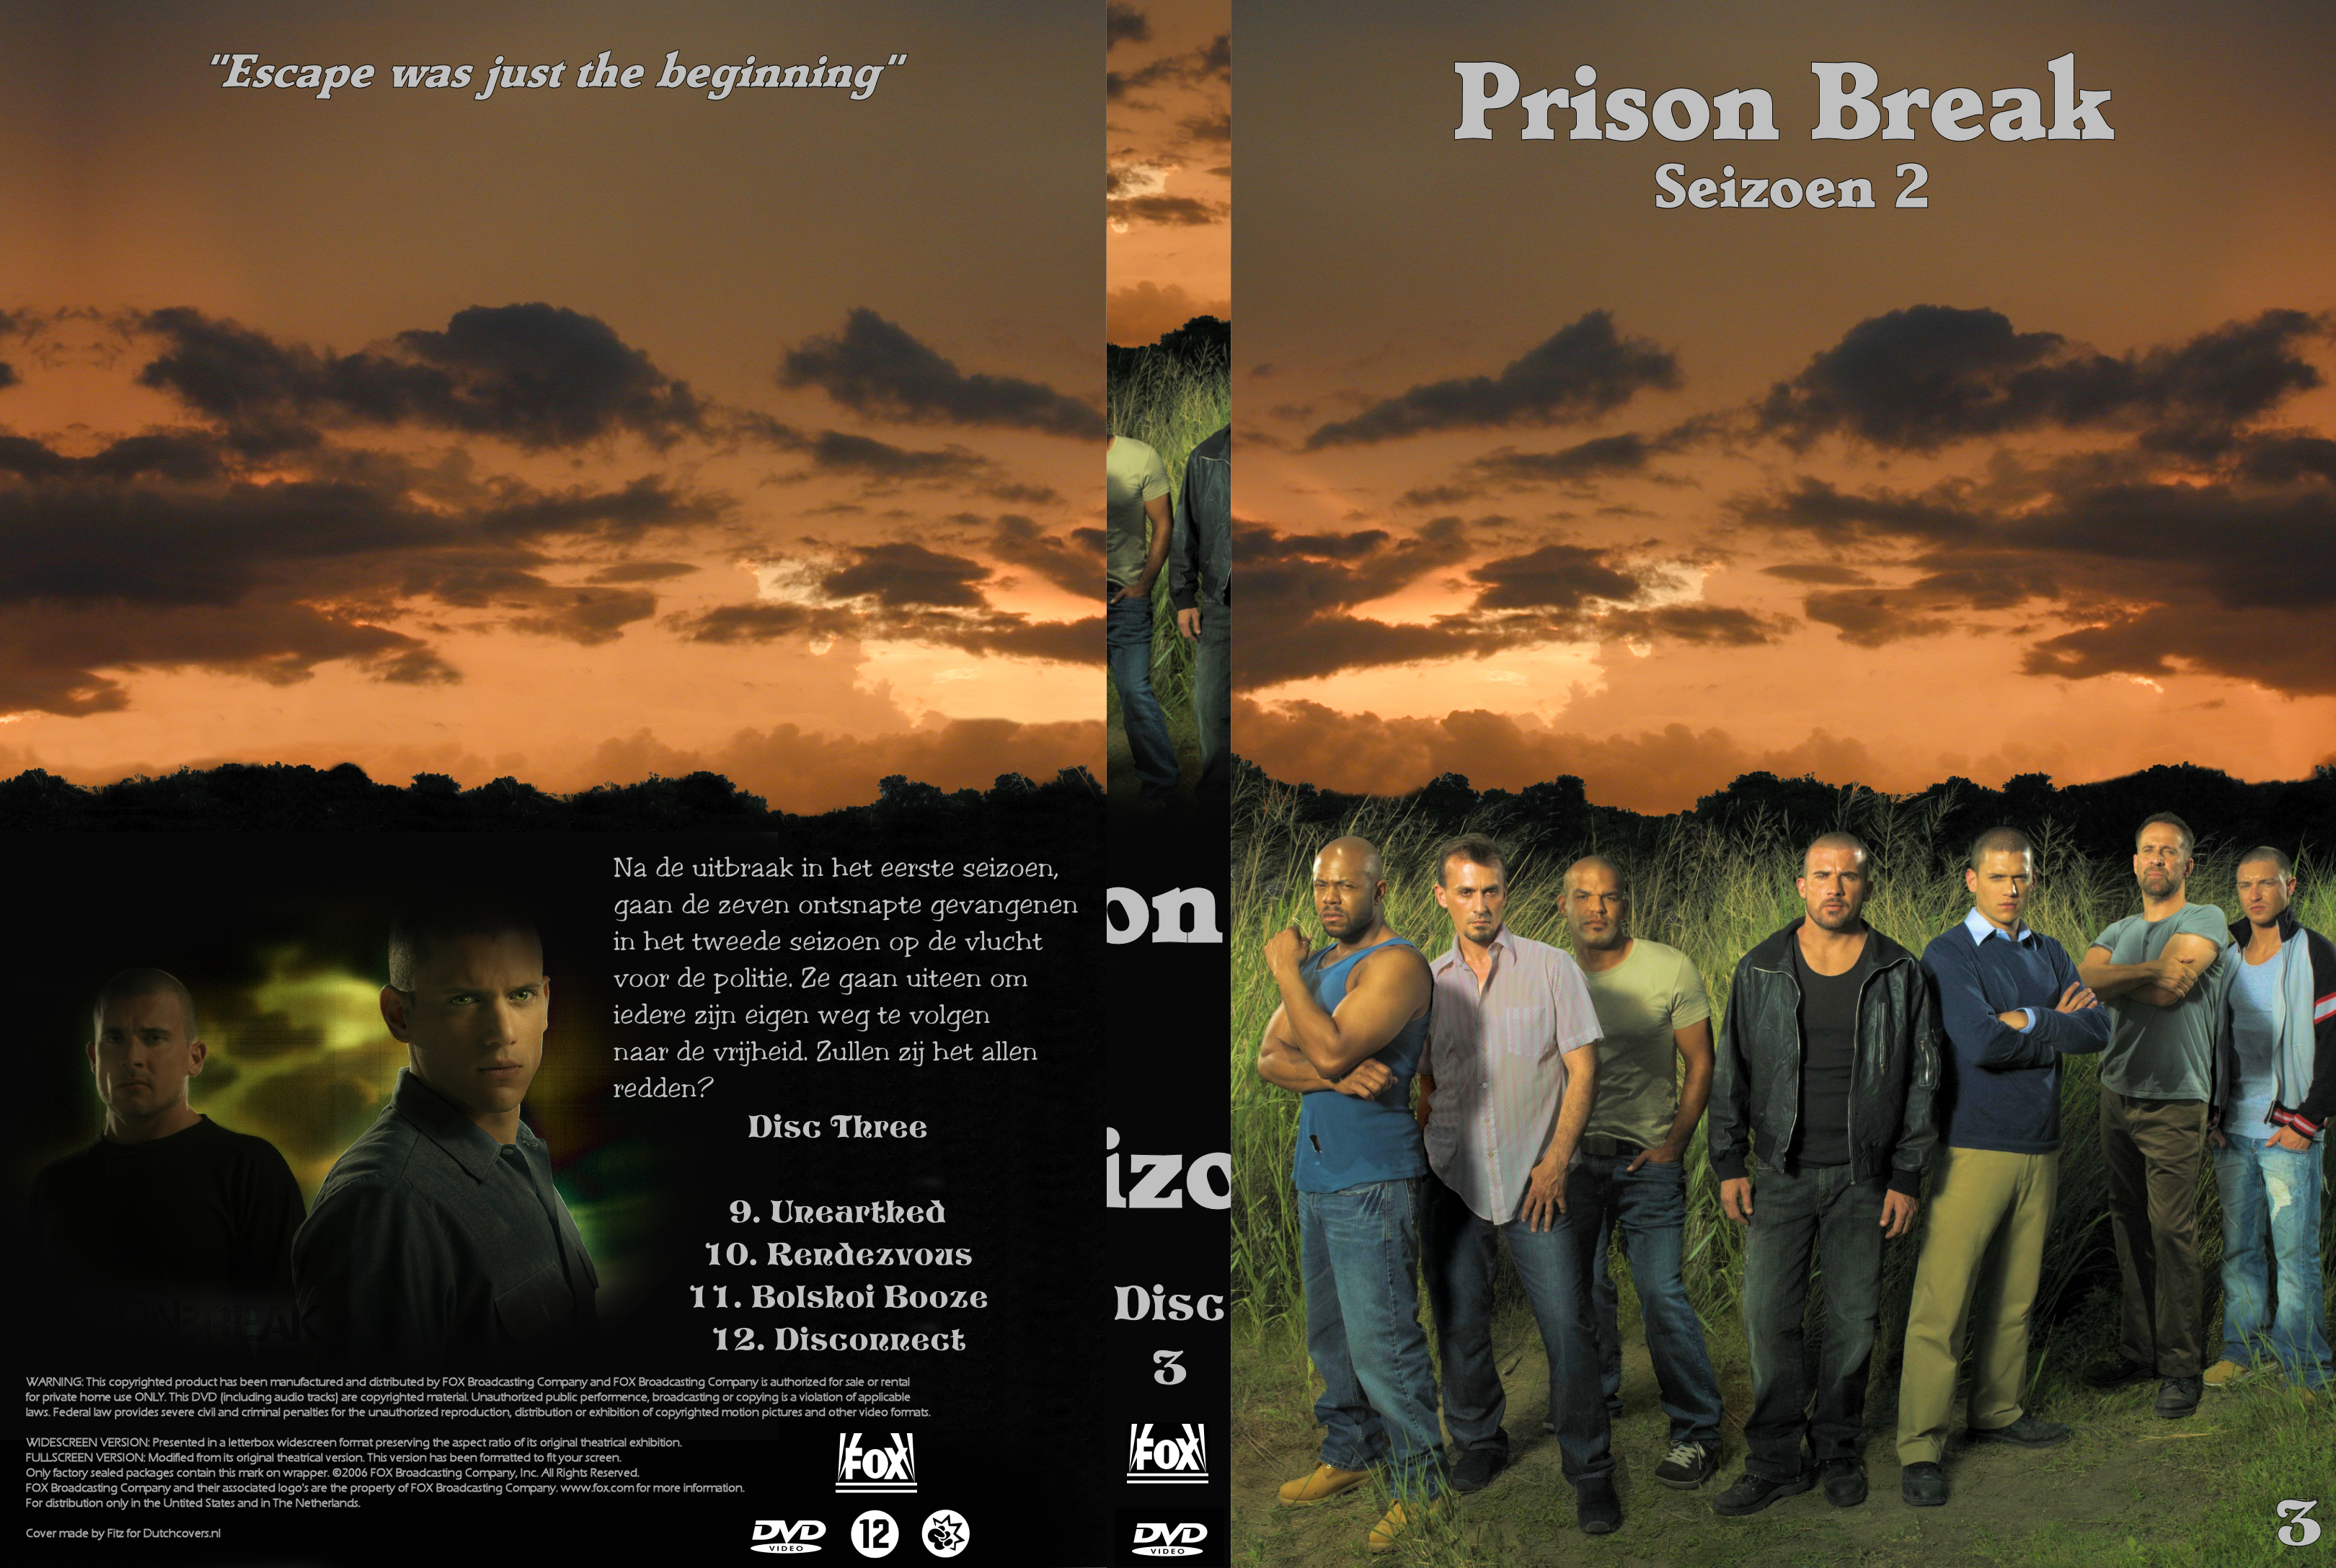 Prison Seizoen 2 dvd 3